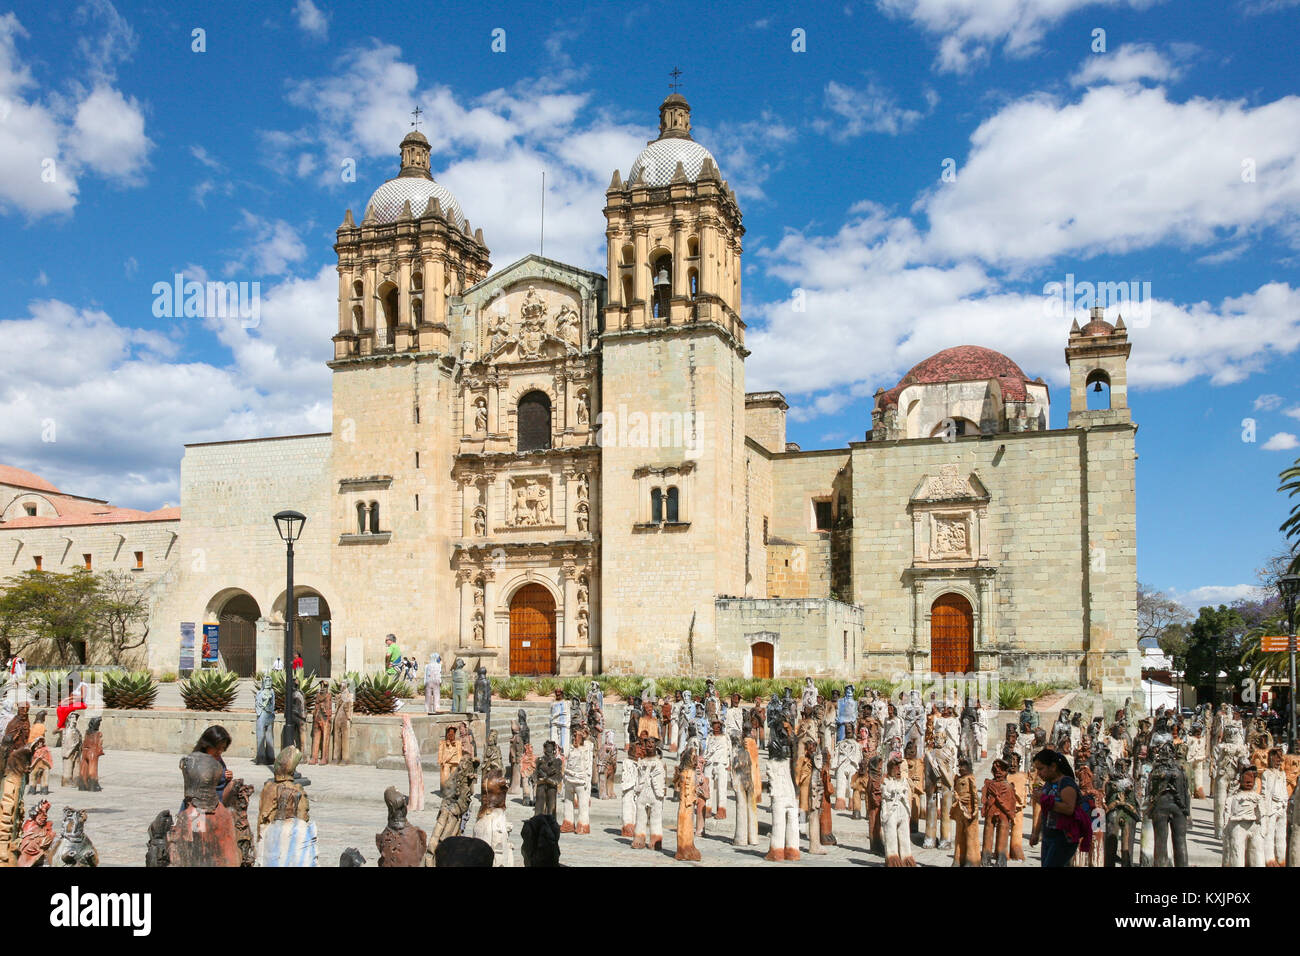 OAXACA, MEXICO - OCT 29TH, 2017: Facade of the Santo Domingo colonial church in Oaxaca, Mexico Stock Photo